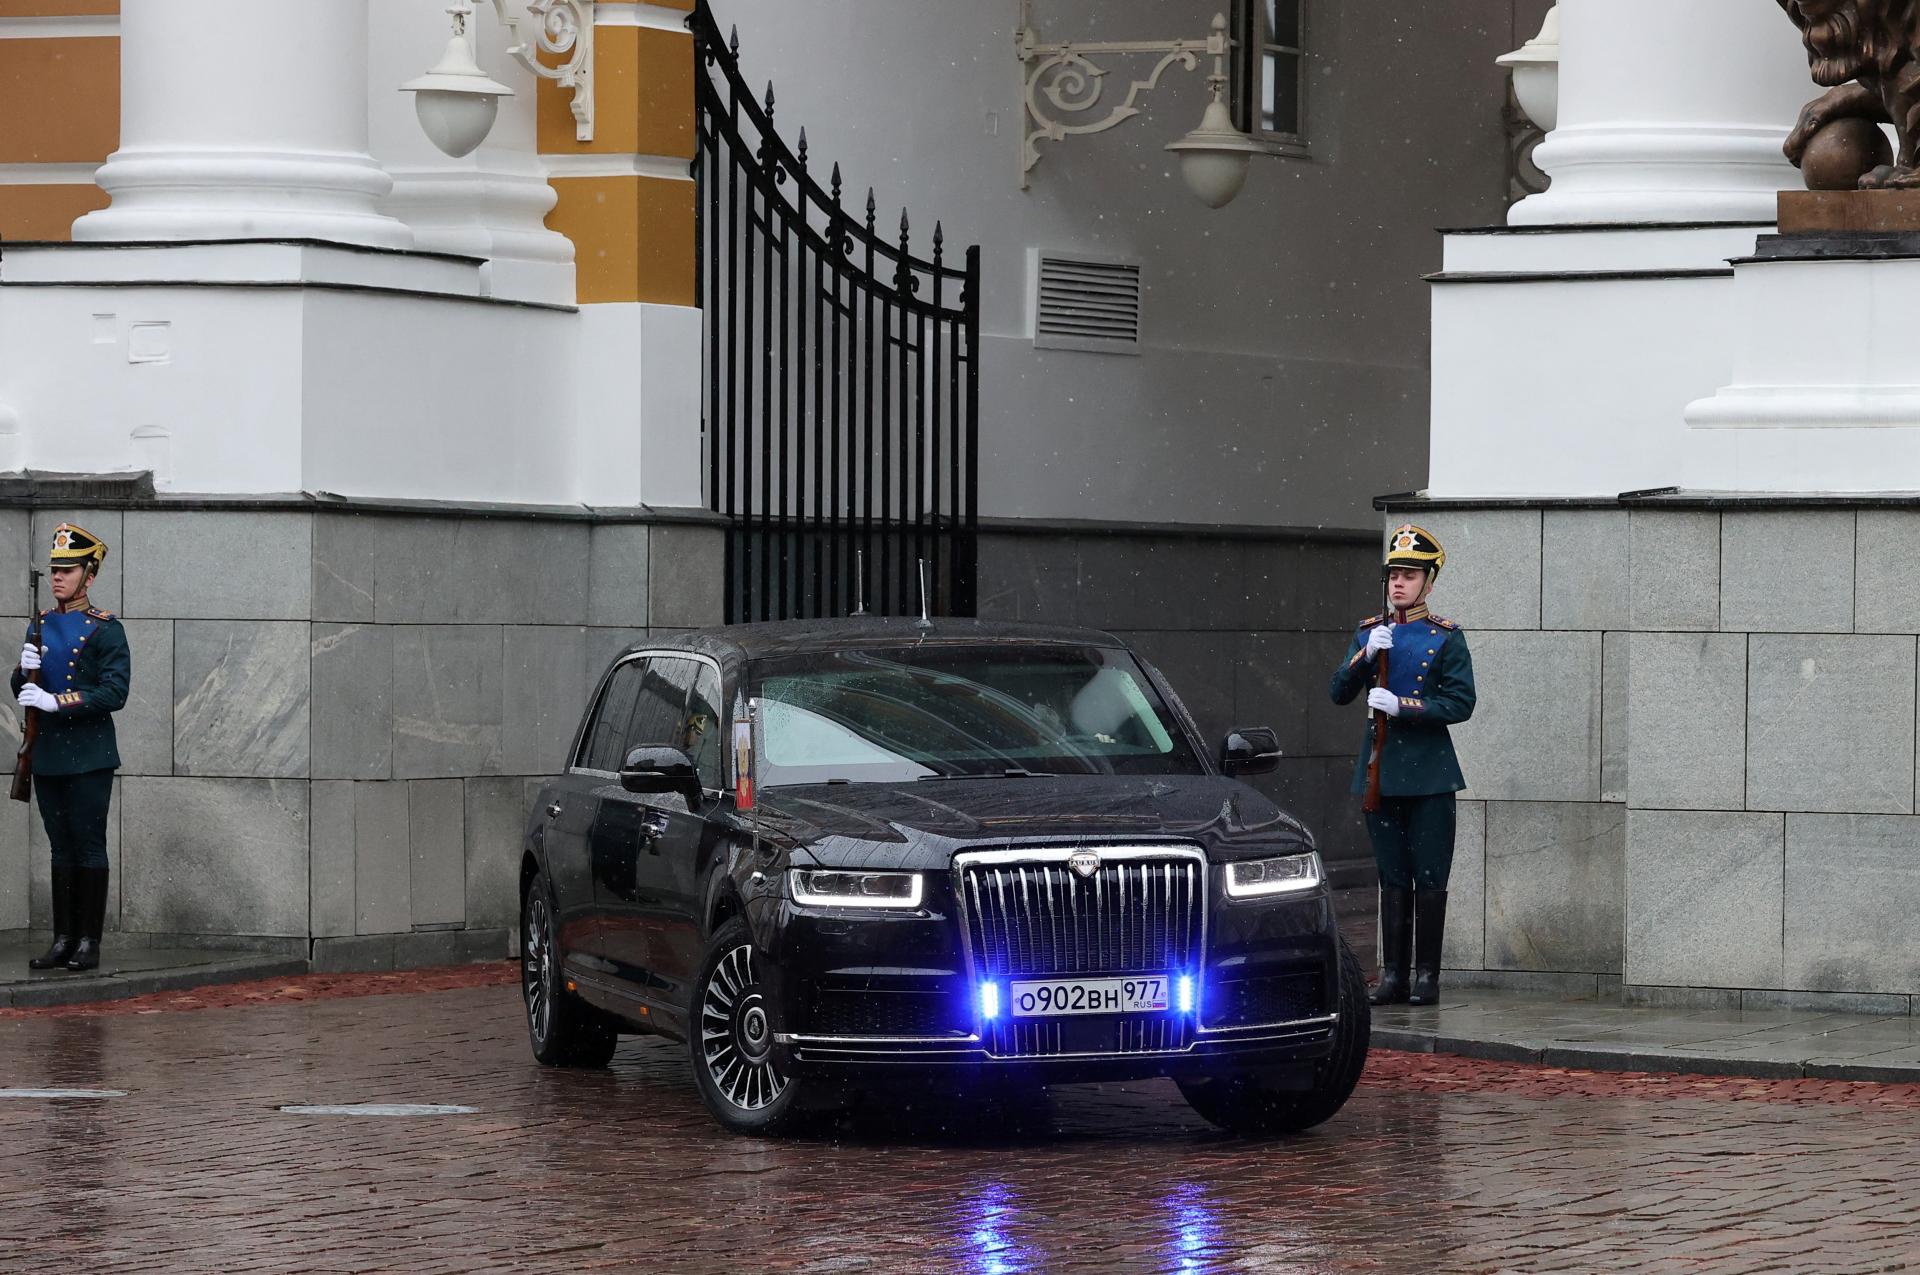 Nová pýcha Putina verejne odhalená. Ruský „Rolls-Royce“ konečne dostal vlastnú tvár